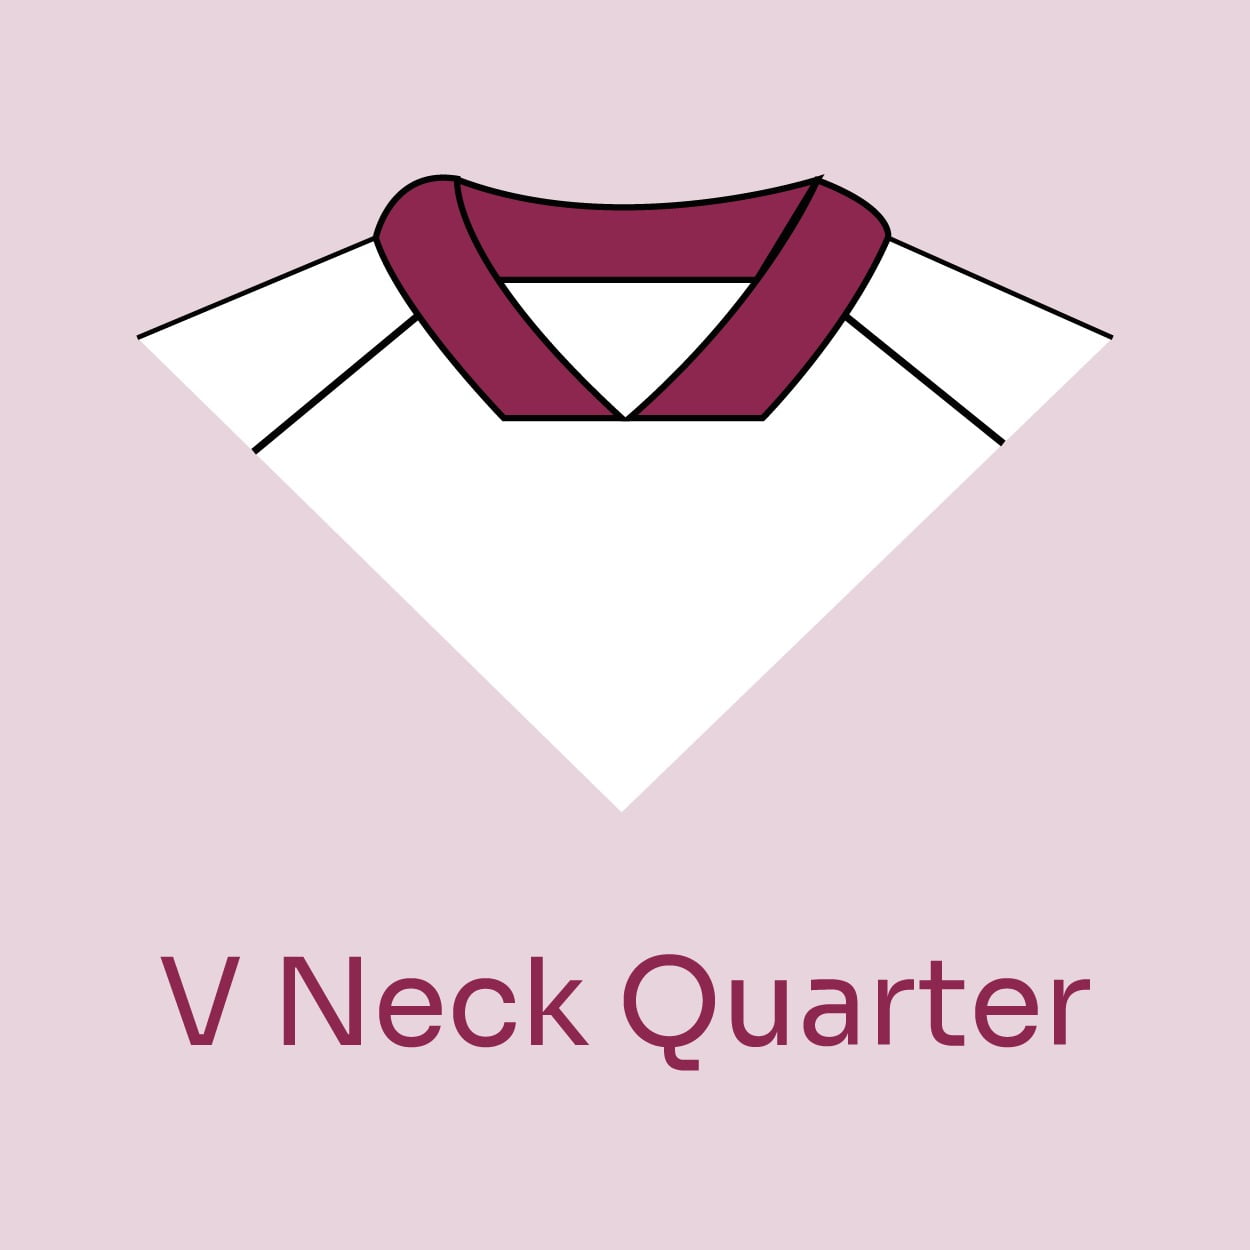 V Neck Quarter